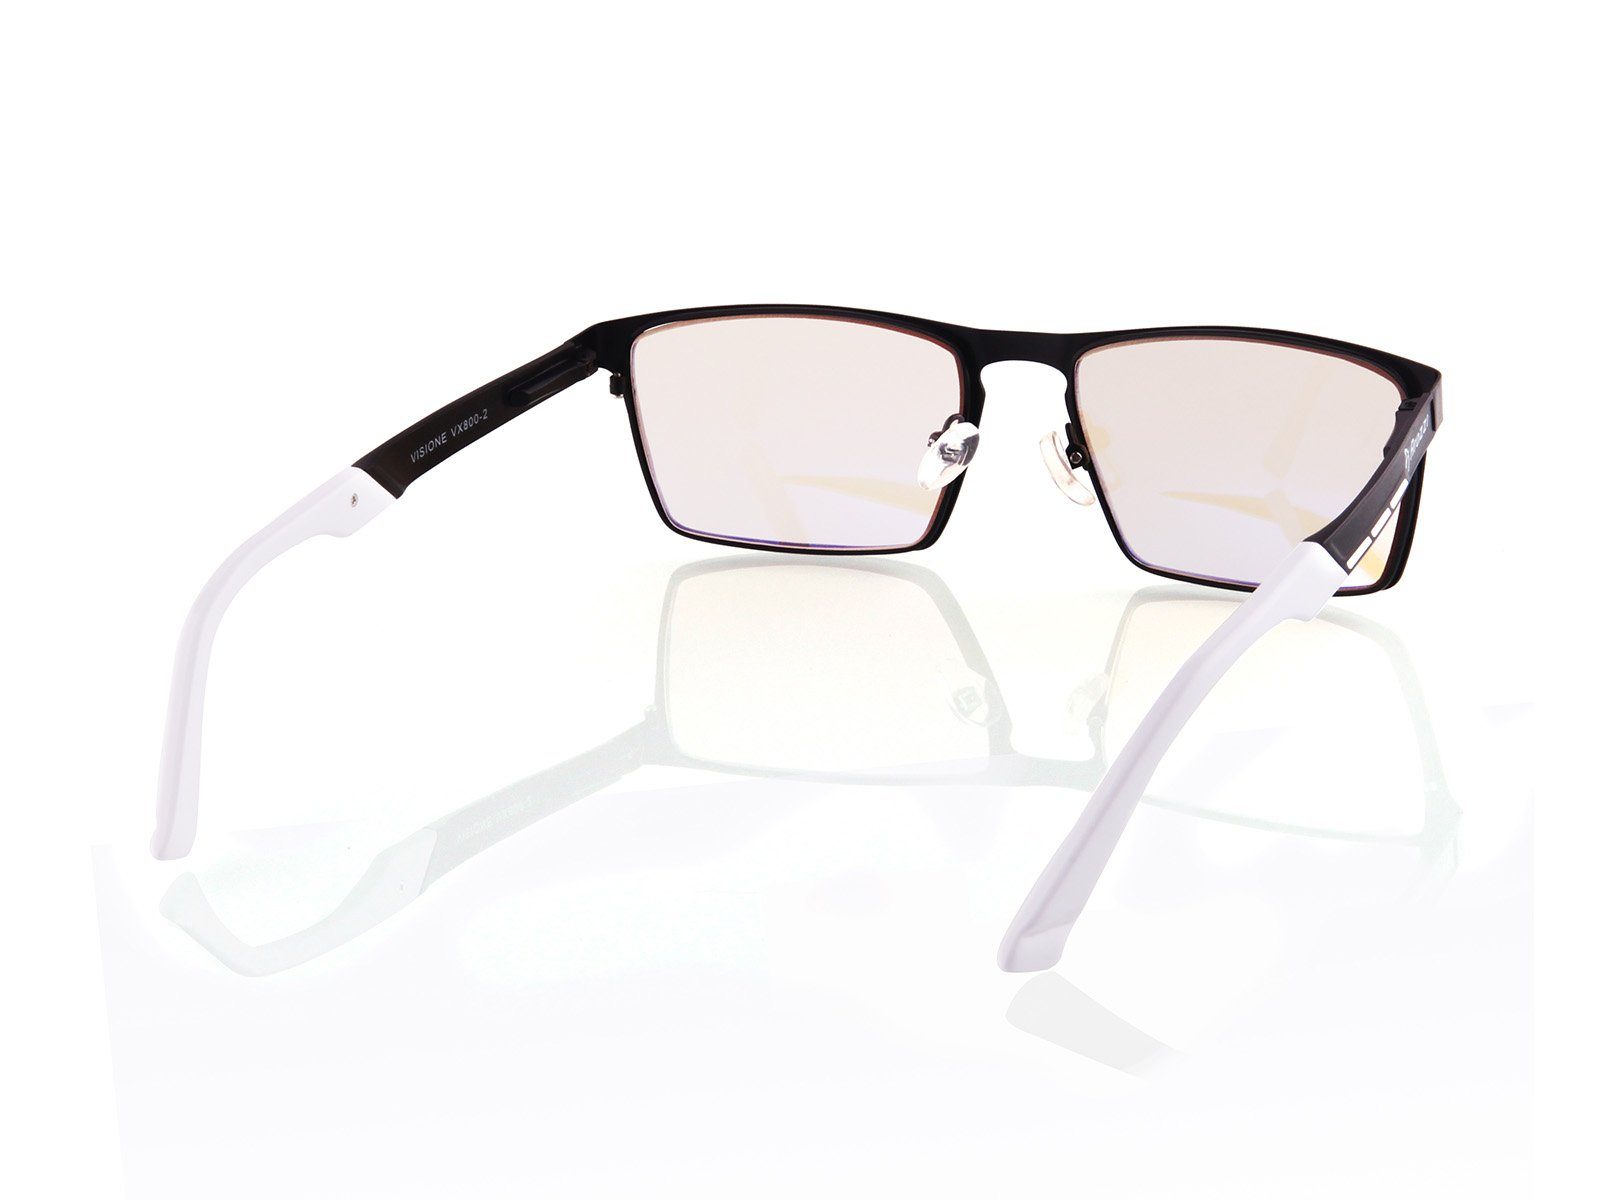 VX-800 Brille Schwarz Gaming Brille - Arozzi Visione Arozzi